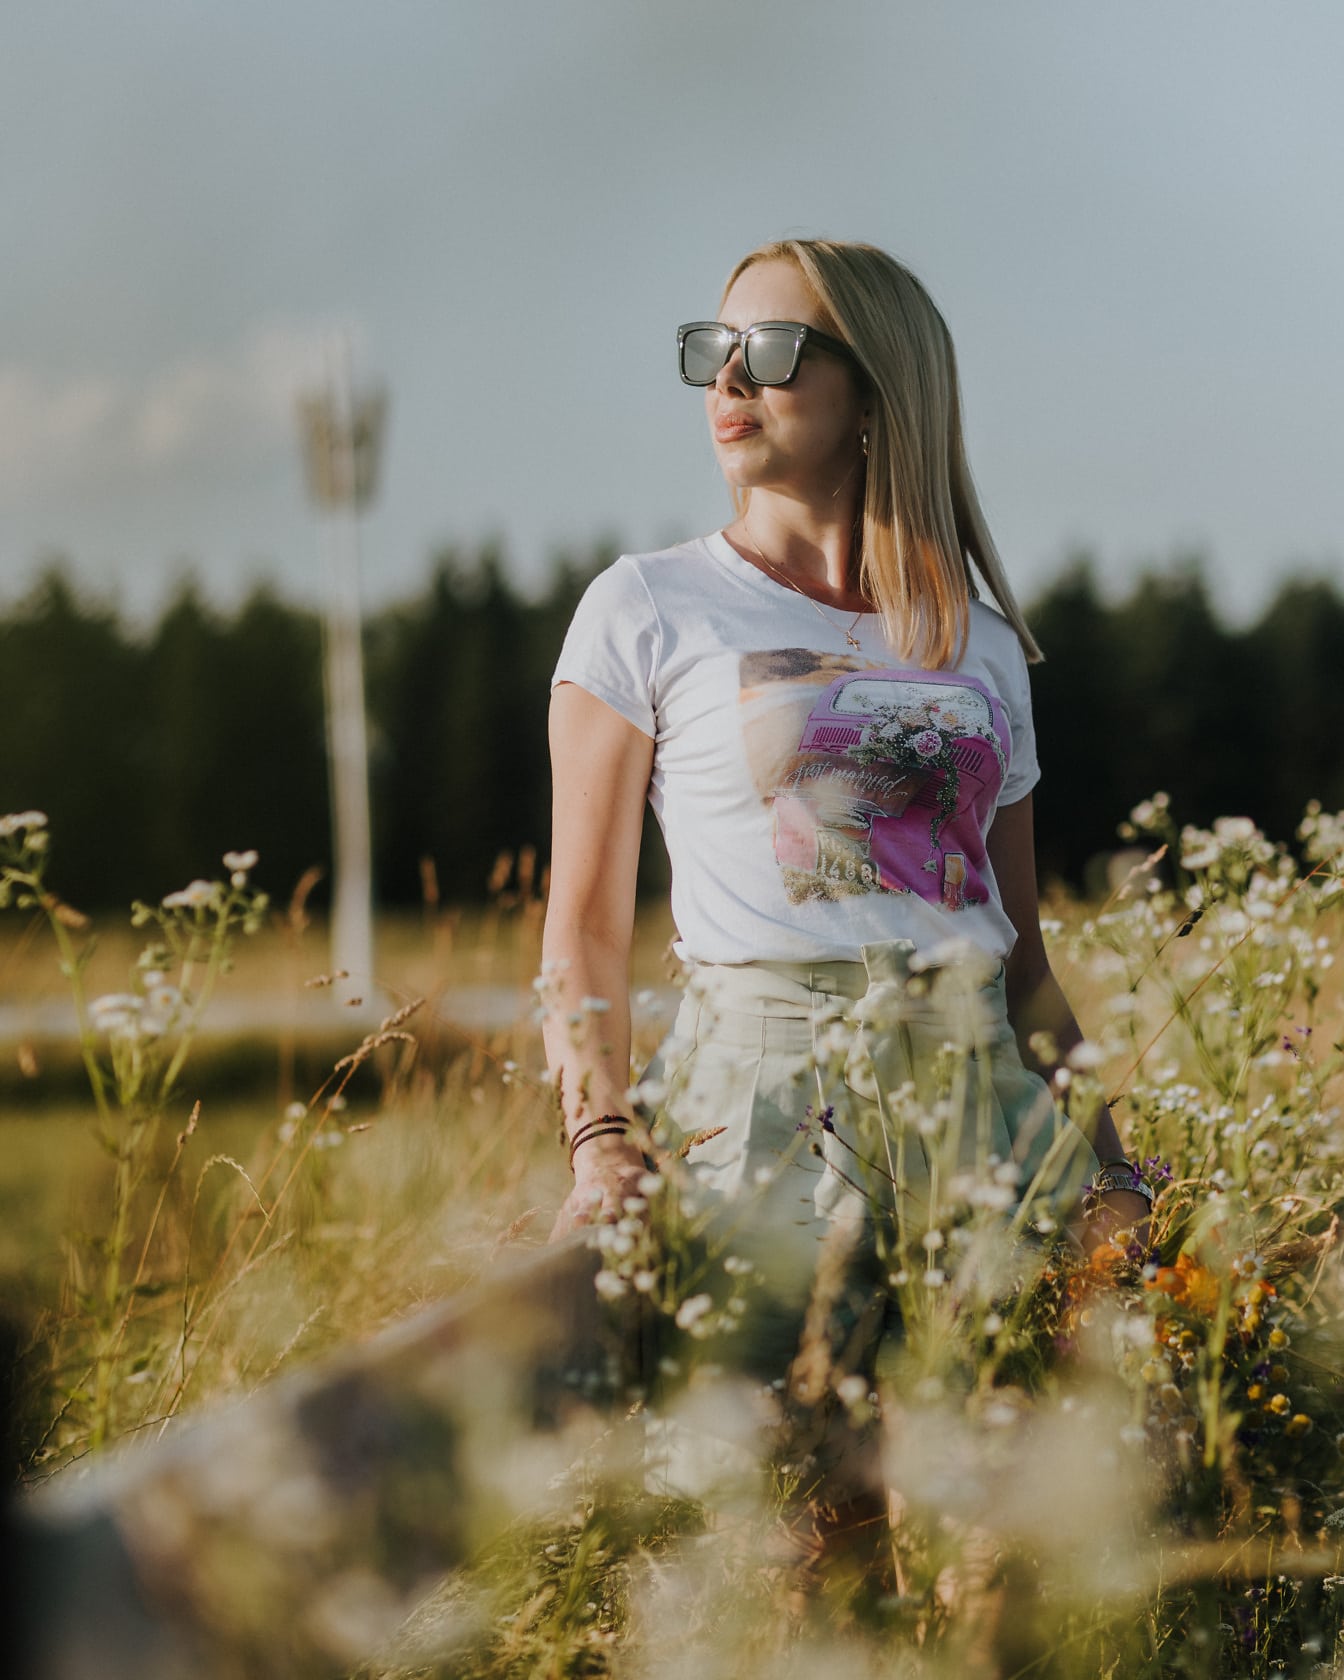 Adolescente joven posando en el prado en un día brillante de verano